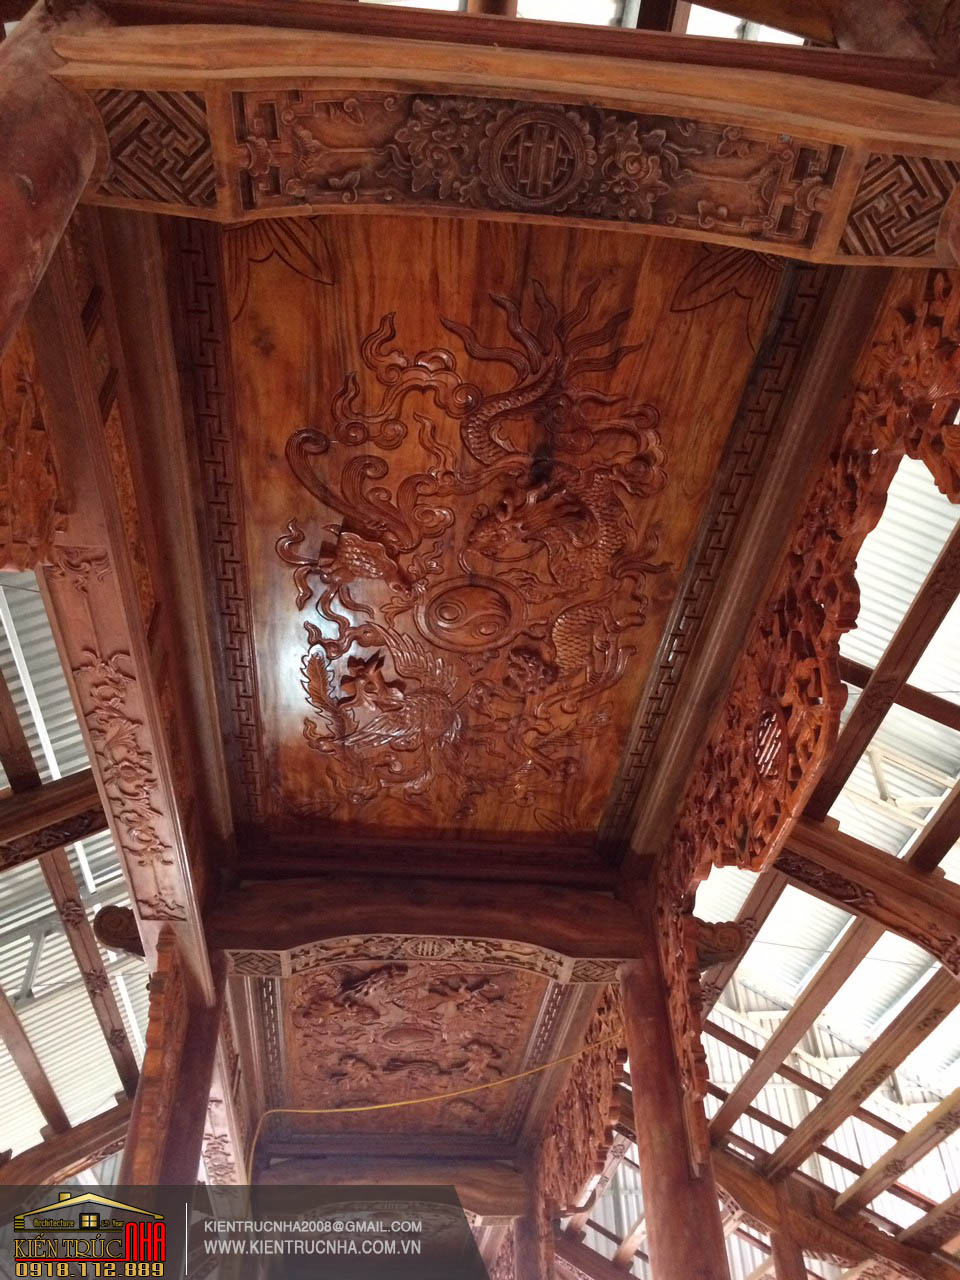 Nhà gỗ đẹp với mái ngói đỏ 3 gian có sân vườn phong cách Trung Quốc